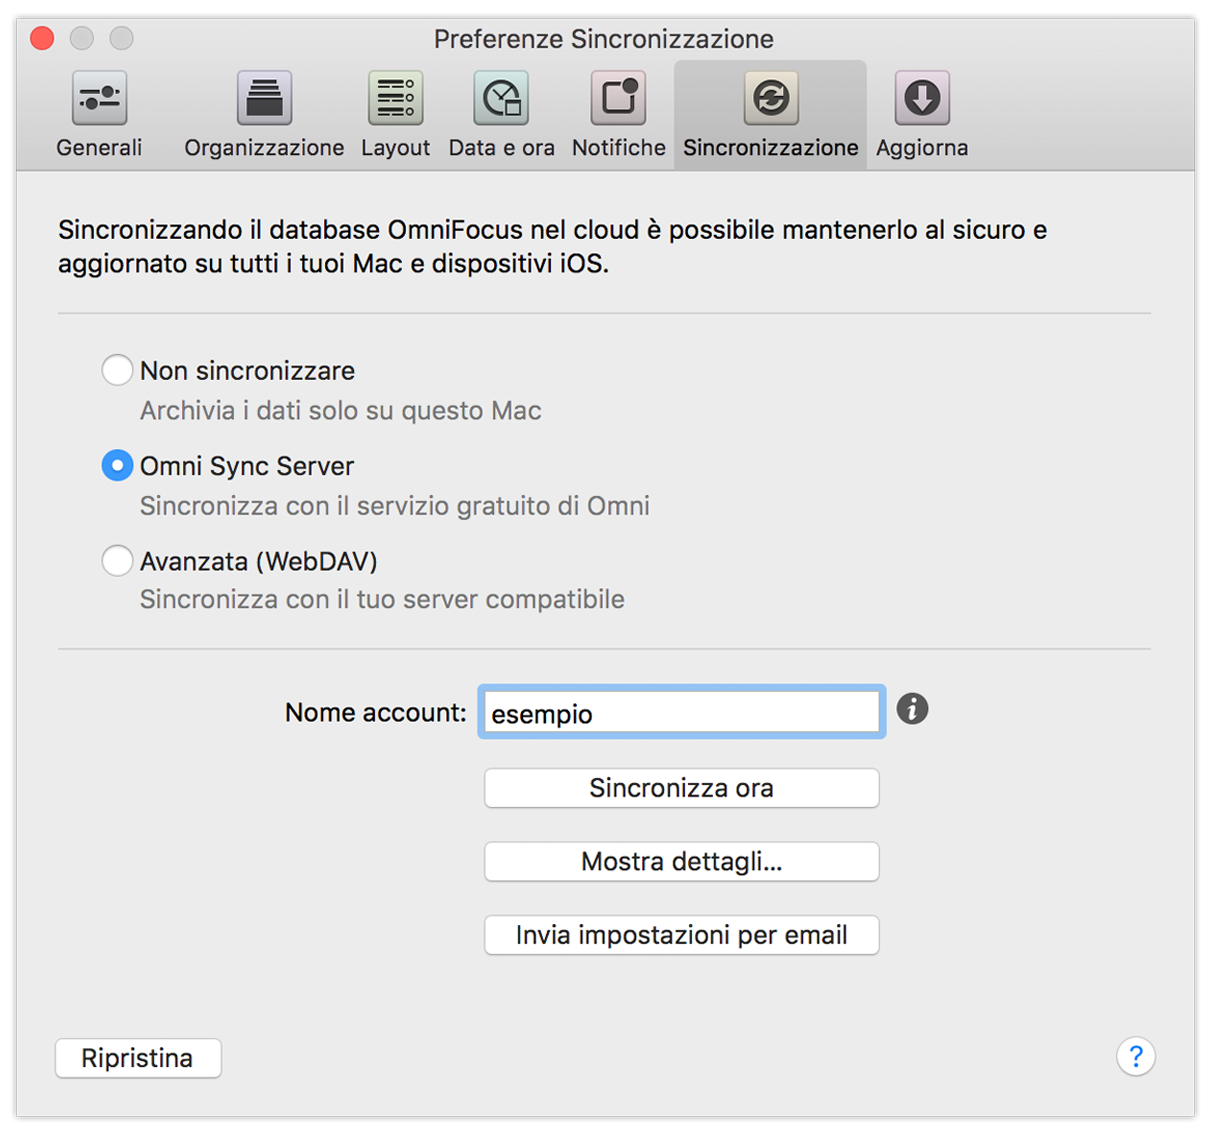 Preferenze Sincronizzazione di OmniFocus 2 per Mac.